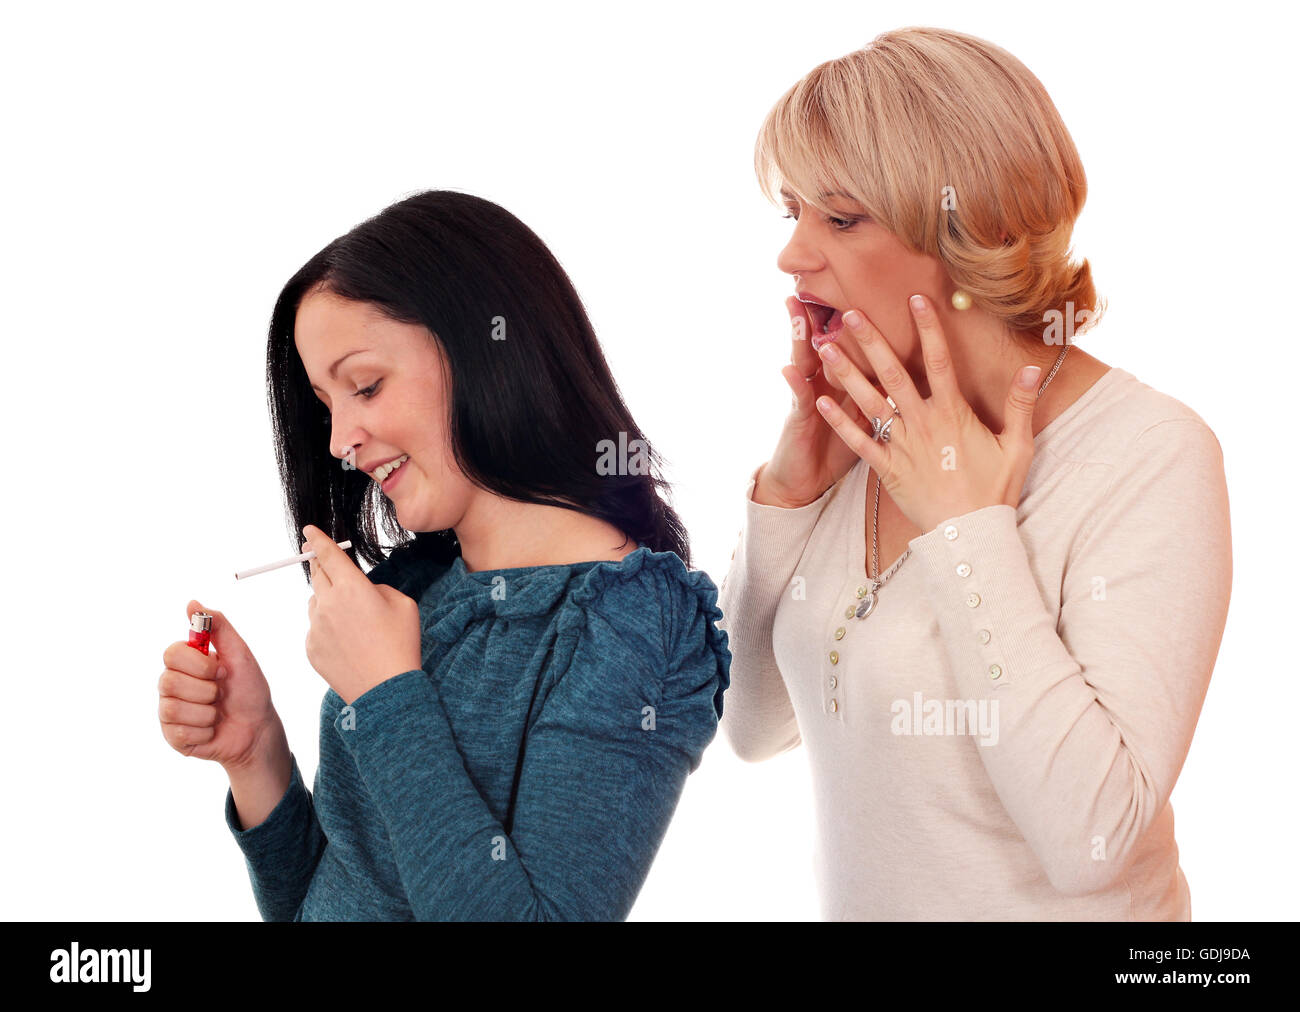 Mädchen rauchen zigarette Ausgeschnittene Stockfotos und -bilder - Alamy